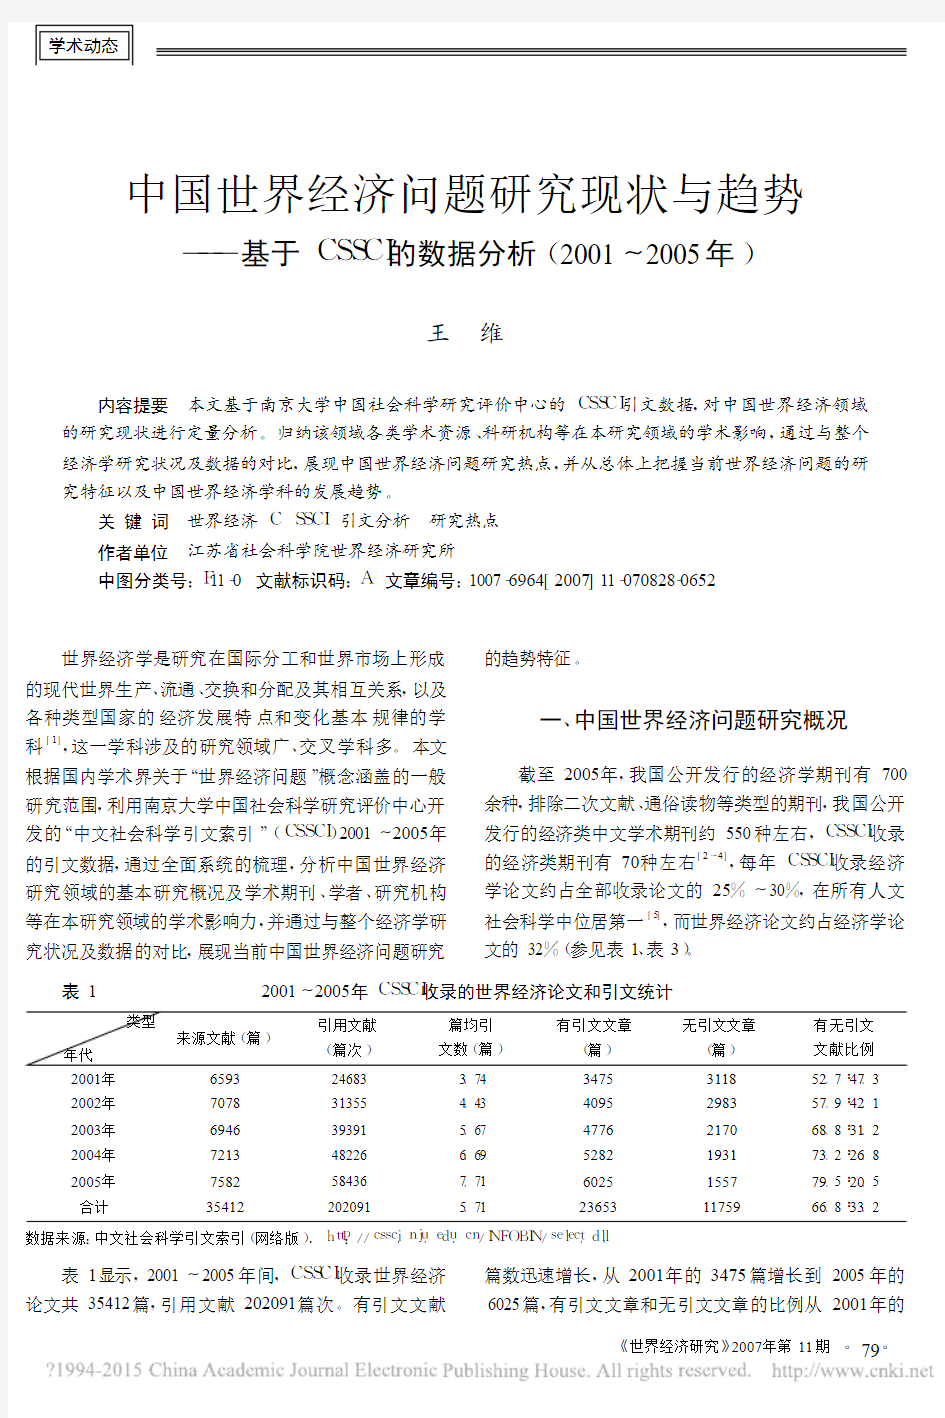 中国世界经济问题研究现状与趋势__省略_数据分析_2001_2005年_王维